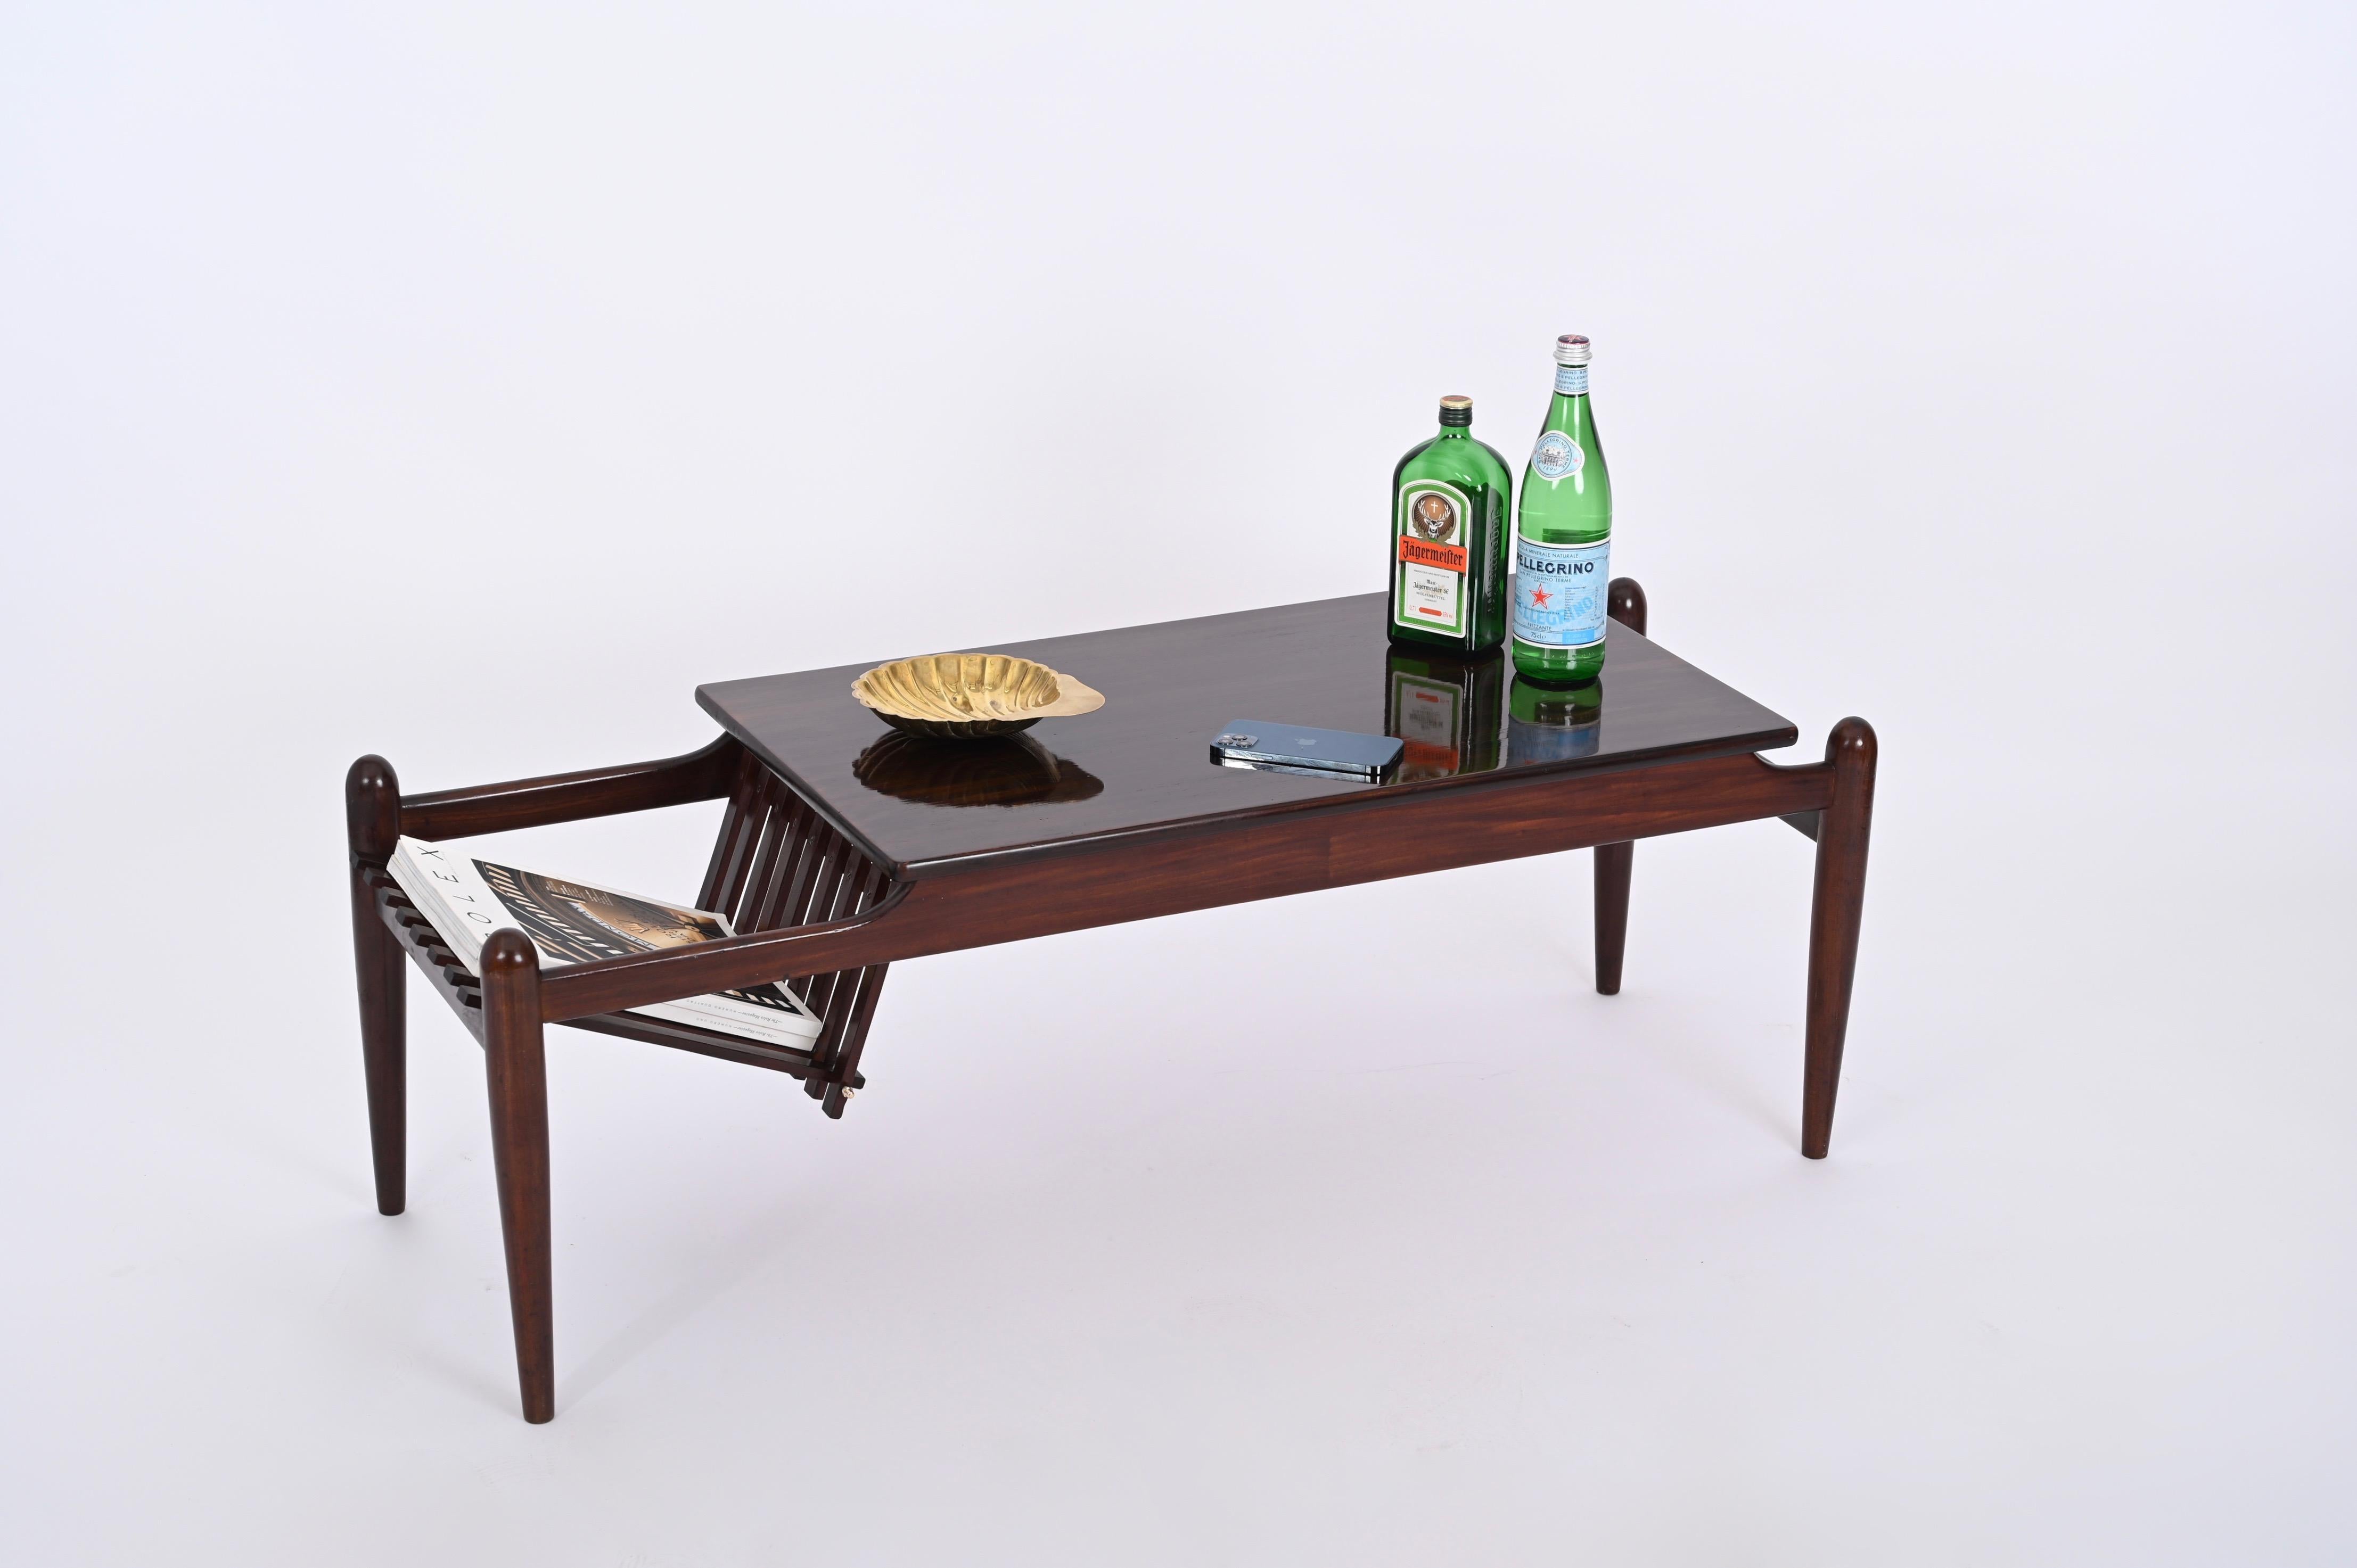 Magnifique table basse avec porte-revues latéral en teck foncé, produite en Italie dans les années 60 dans le style d'Ico Parisi.

Le ton bois du plateau est tout simplement étonnant et la particularité de l'élégant porte-revues avec des finitions